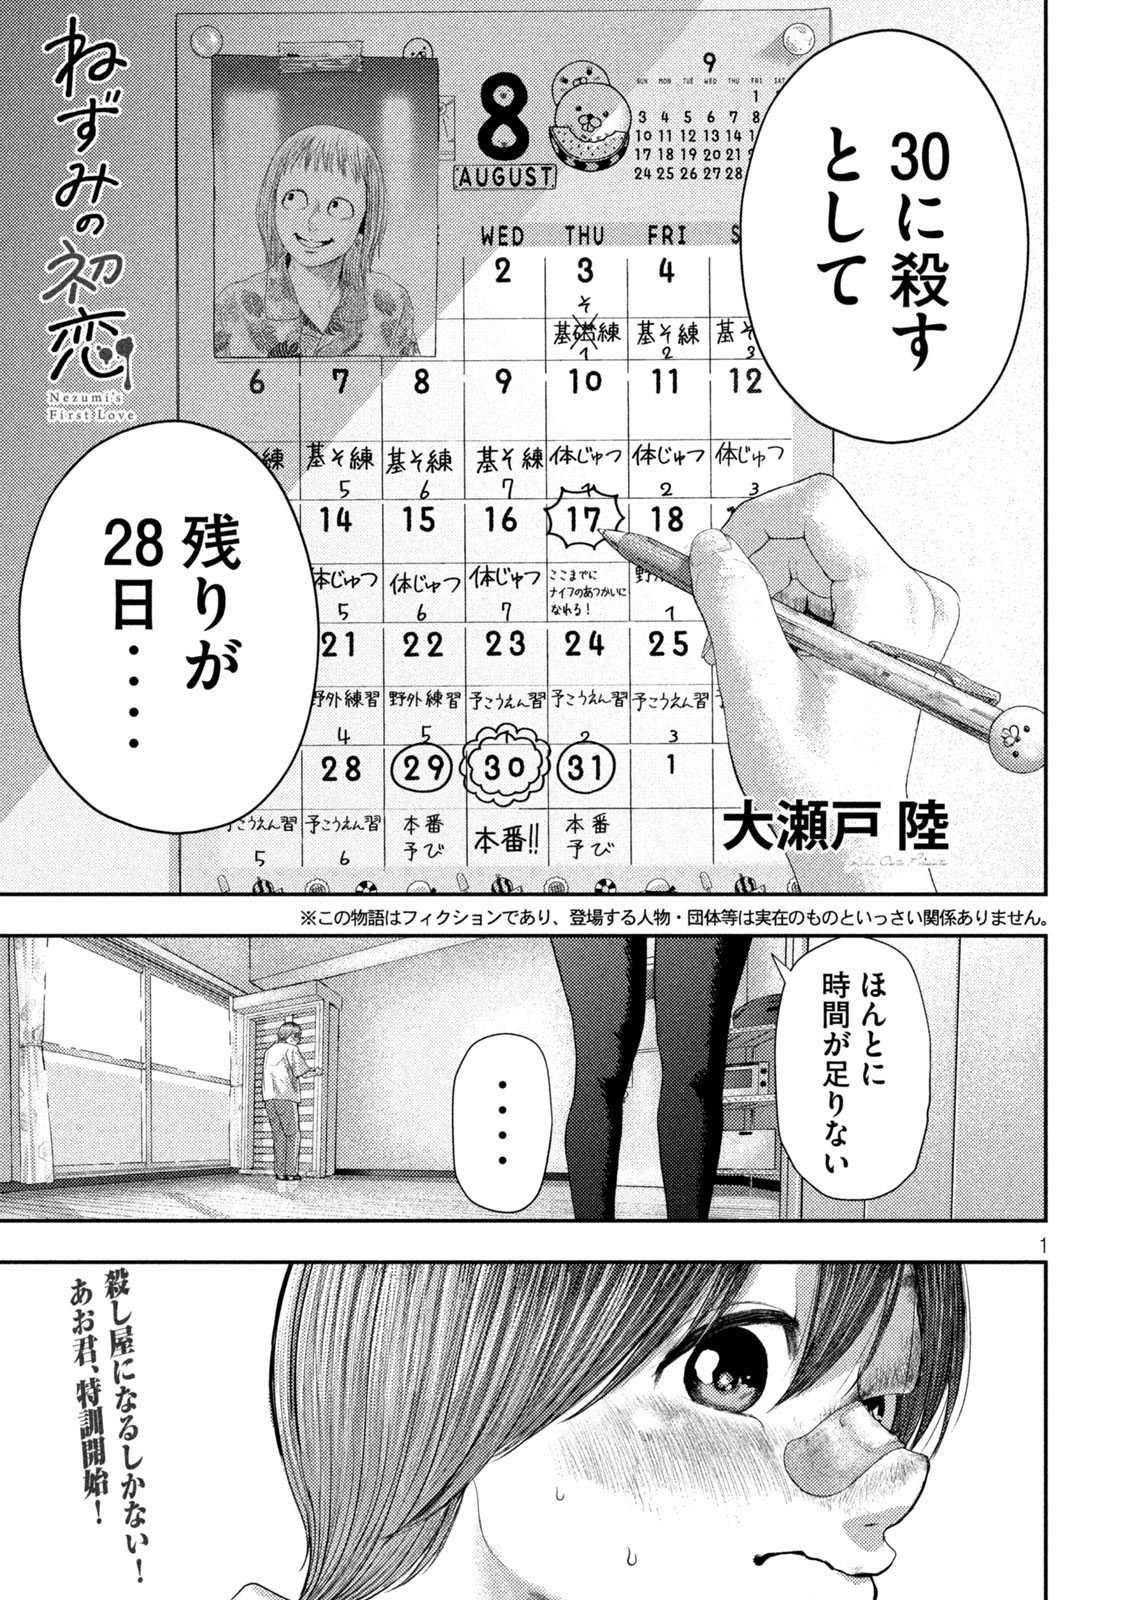 Nezumi no Koi - Chapter 4 - Page 1